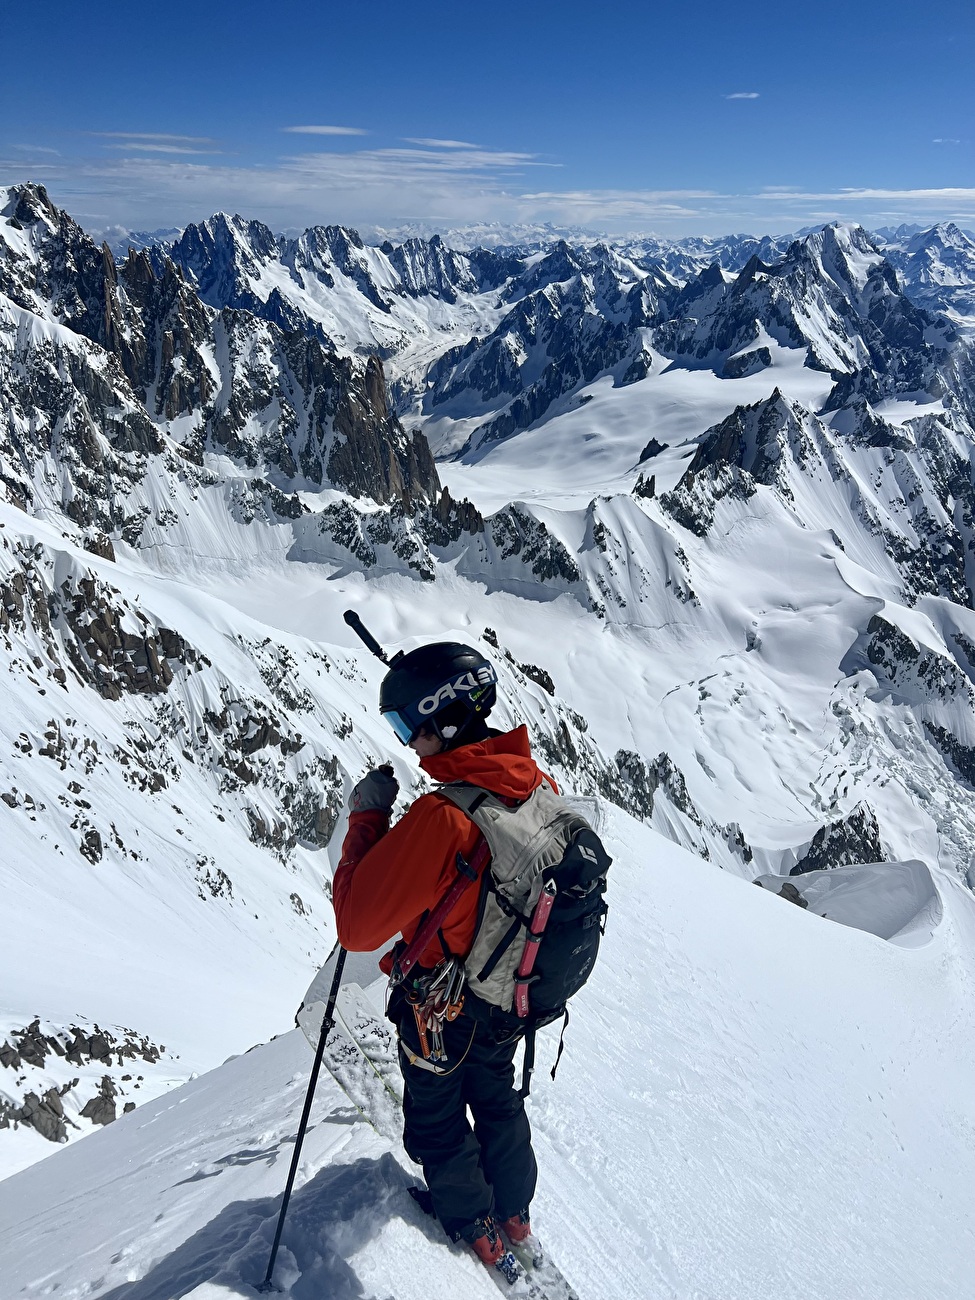 Mont Blanc Brenva Face - La Diagonale de la Brenva Face (Mont Blanc) skiée par Nico Borgeot, Gaspard Buro et Ross Hewitt